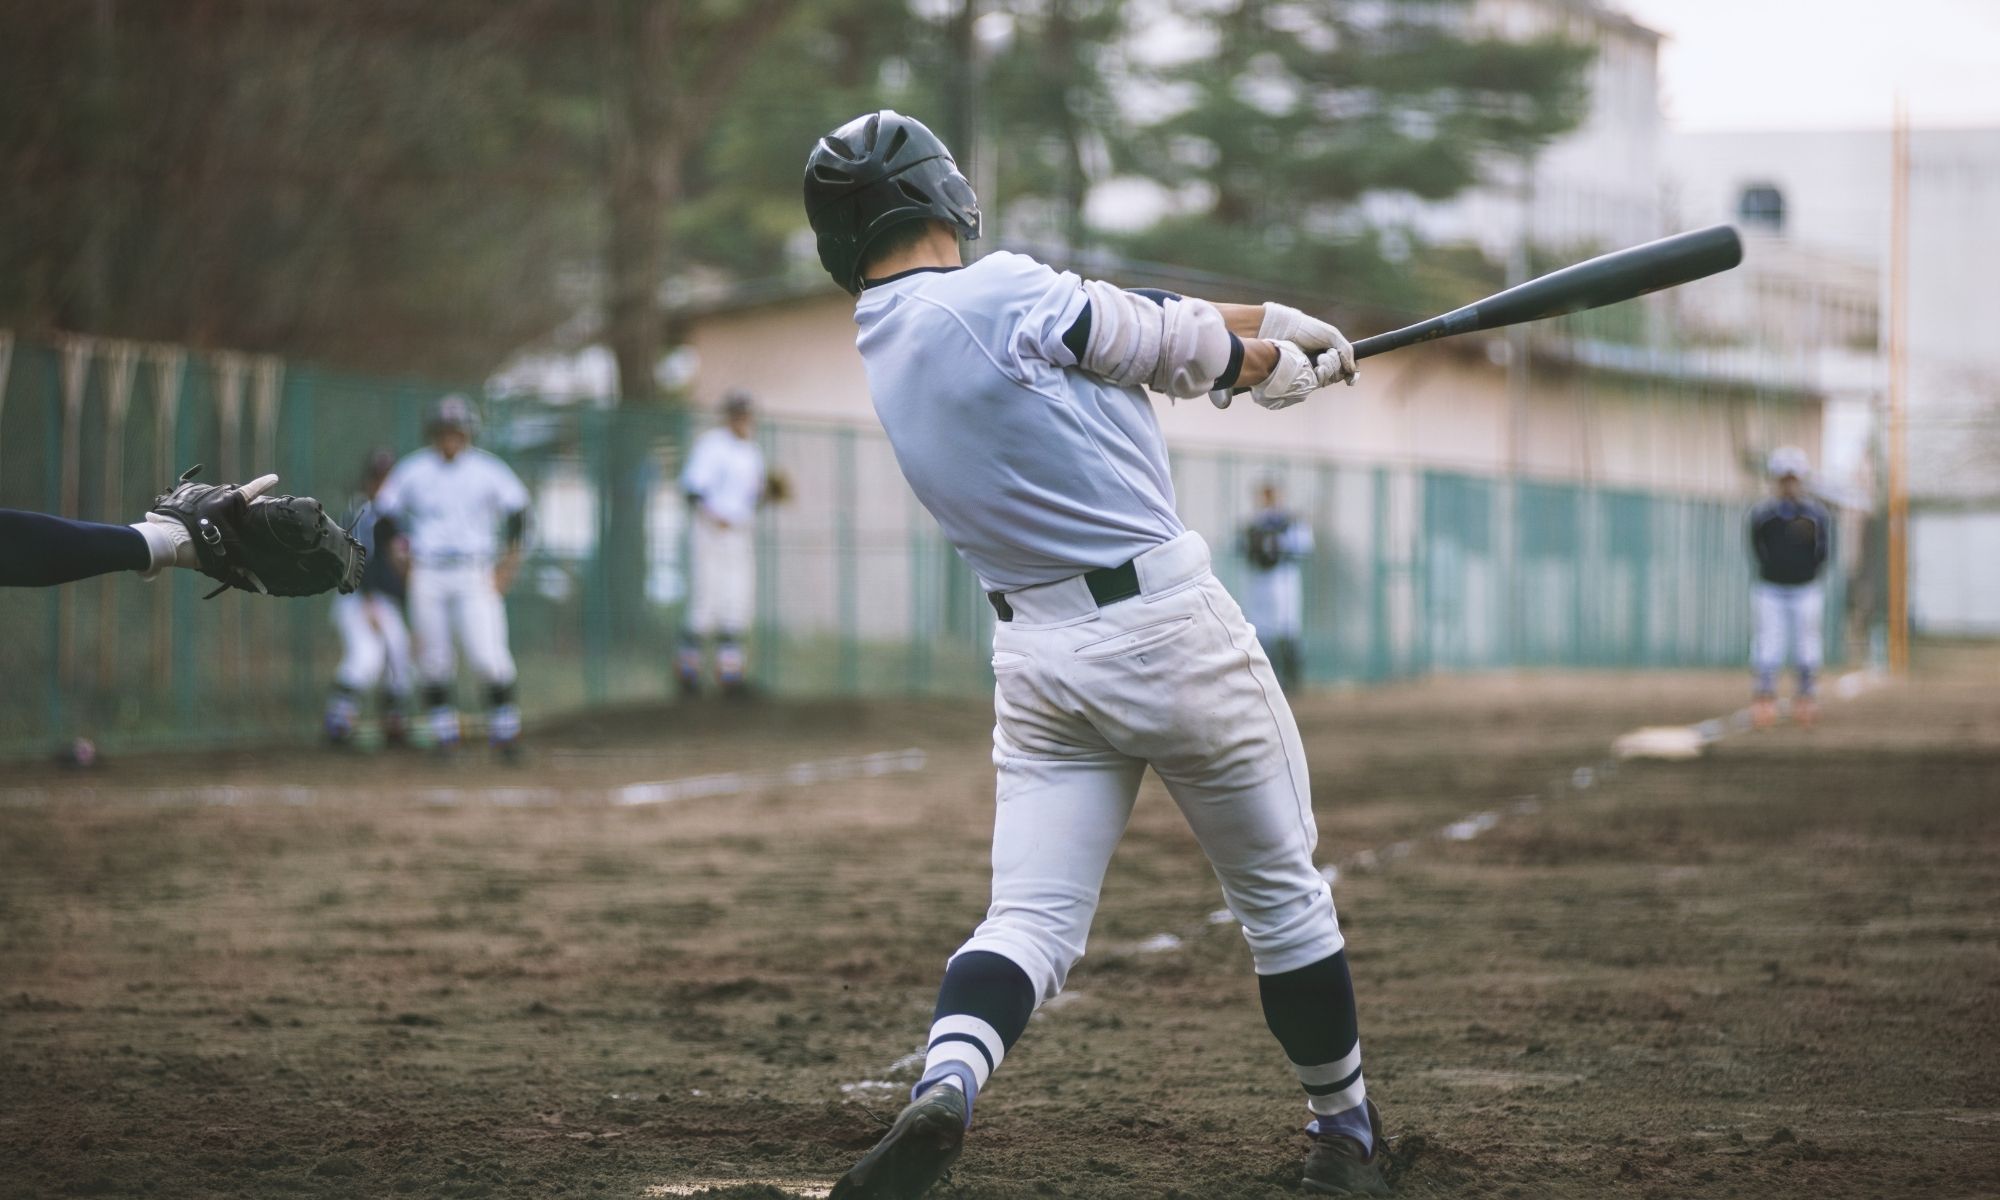 Baseball player at bat swinging at a pitch.